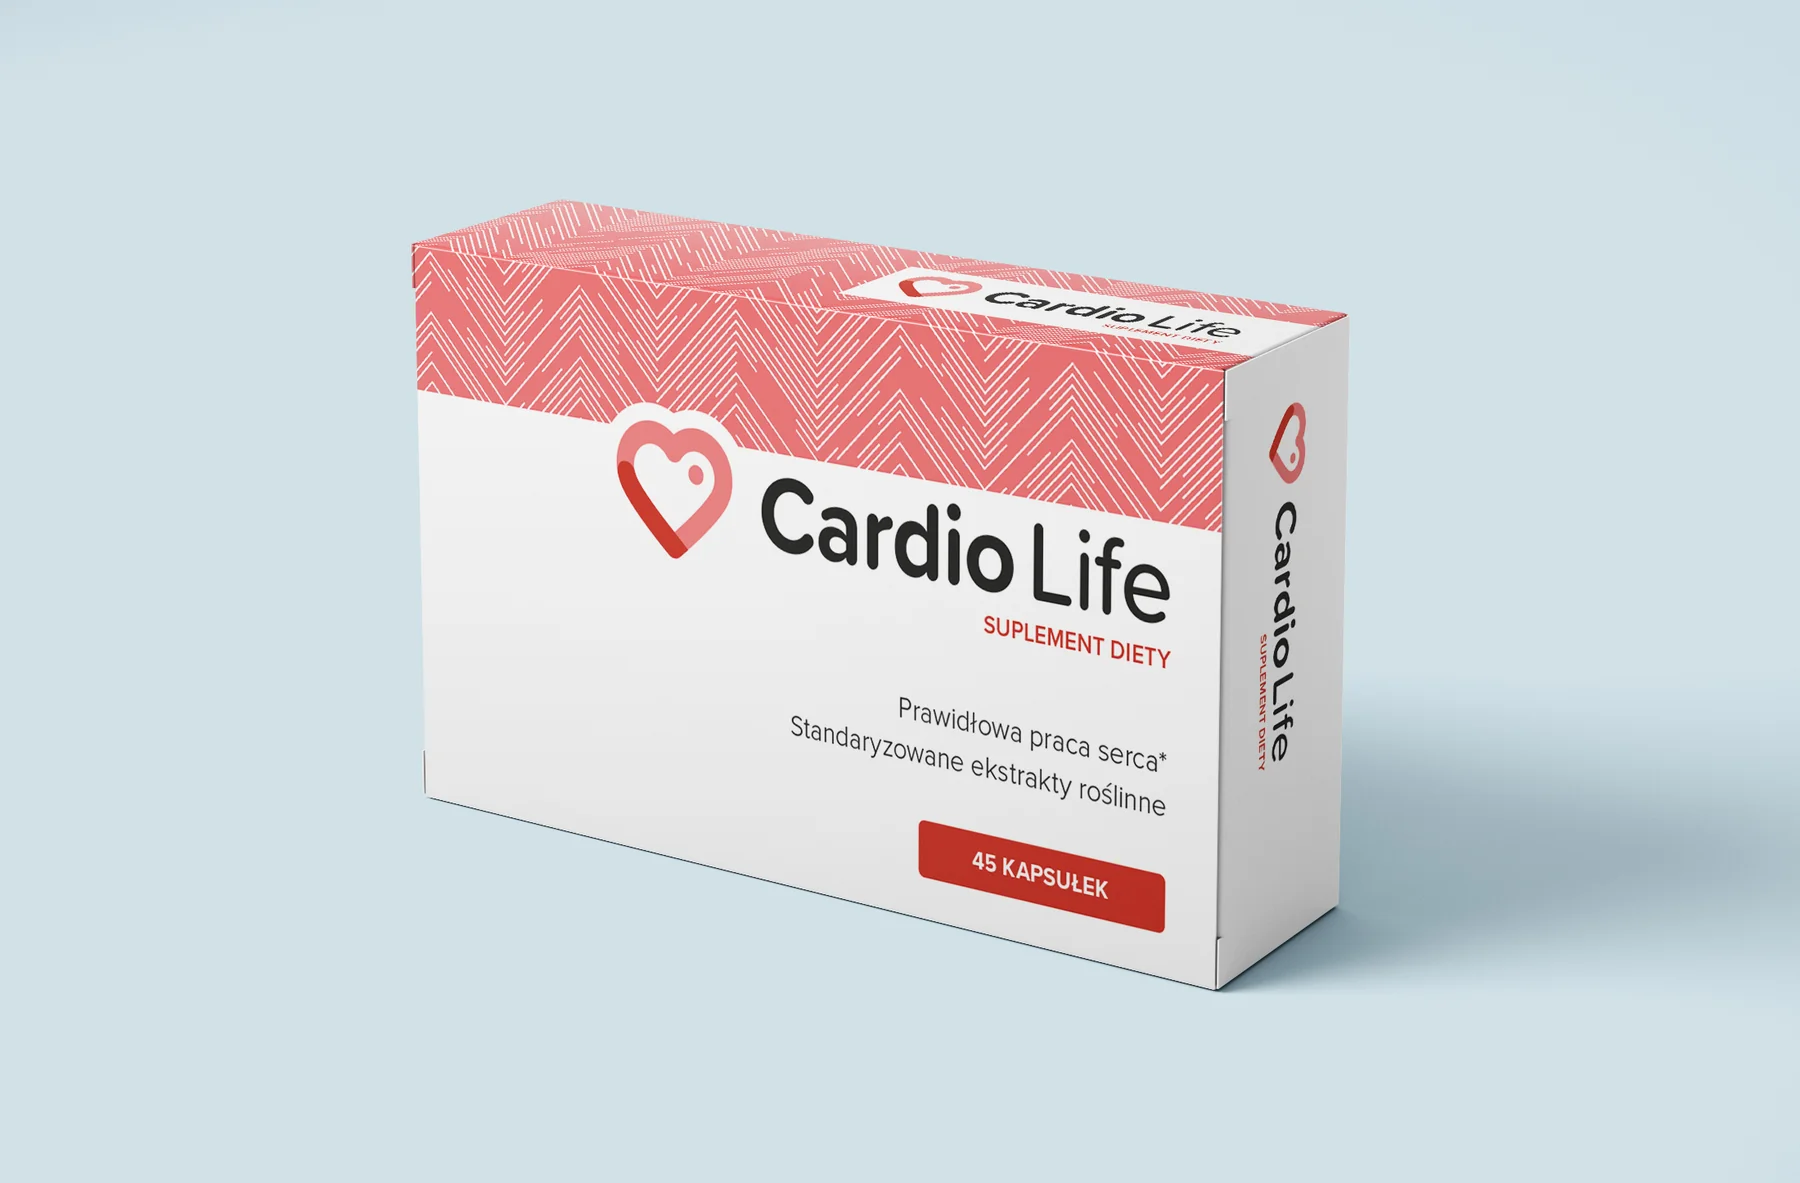 Cardio Life - bewertungen - anwendung - inhaltsstoffe - erfahrungsberichte